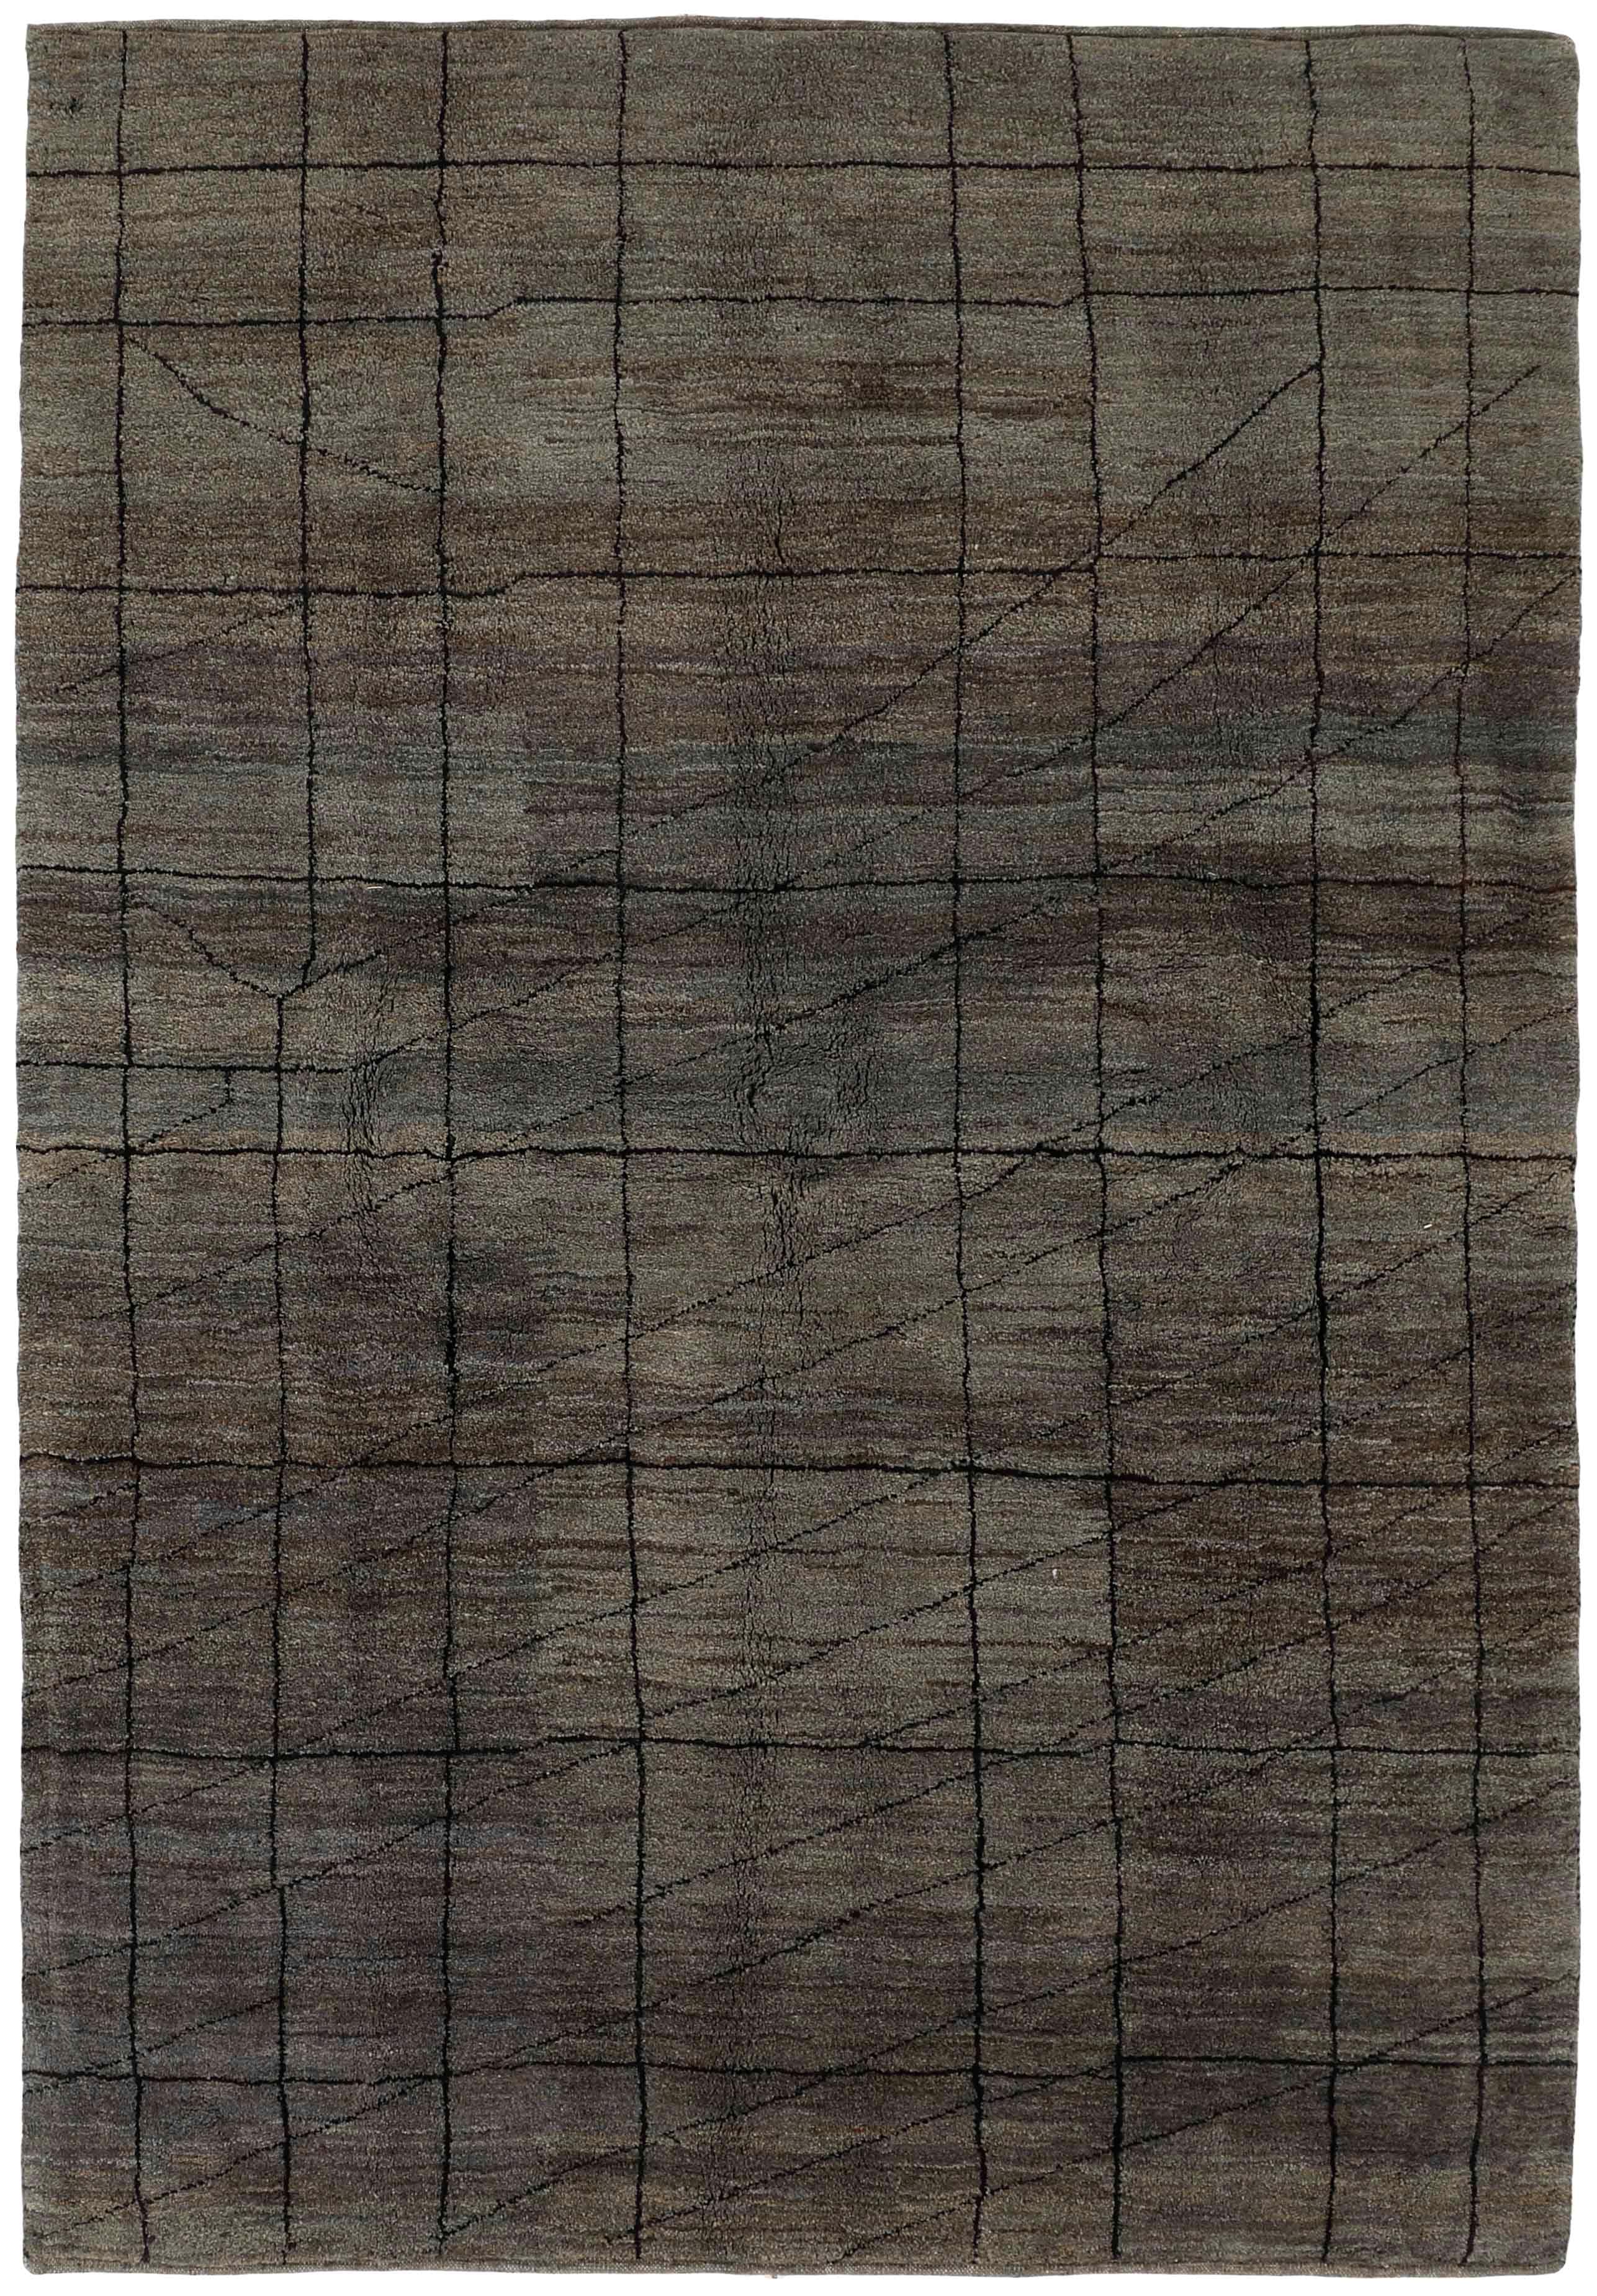 Authentic Oriental Kelim flatweave rug in brown and black